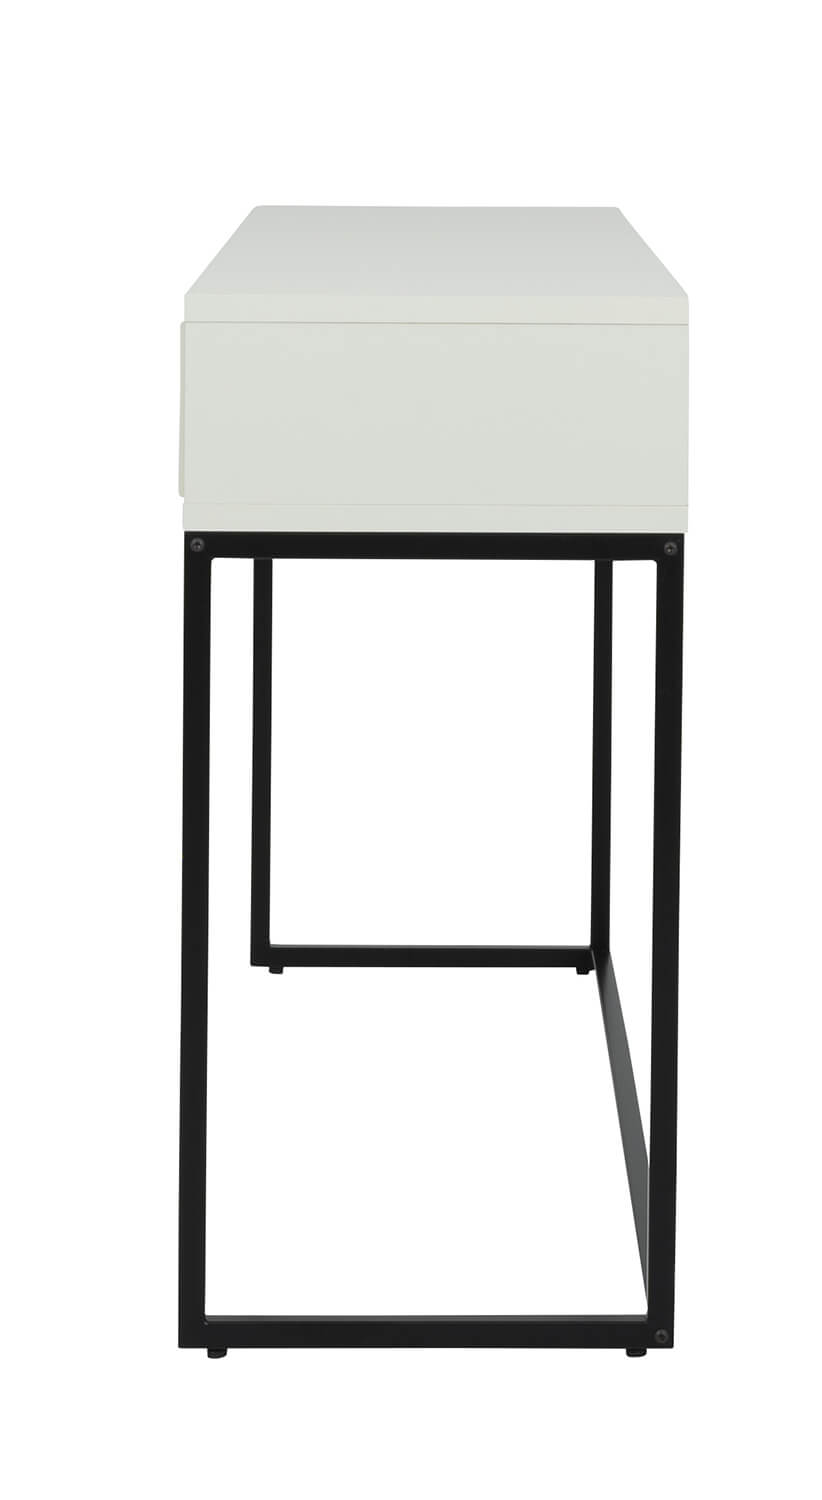 Konzolový stolek pili 118 x 36 cm bílý